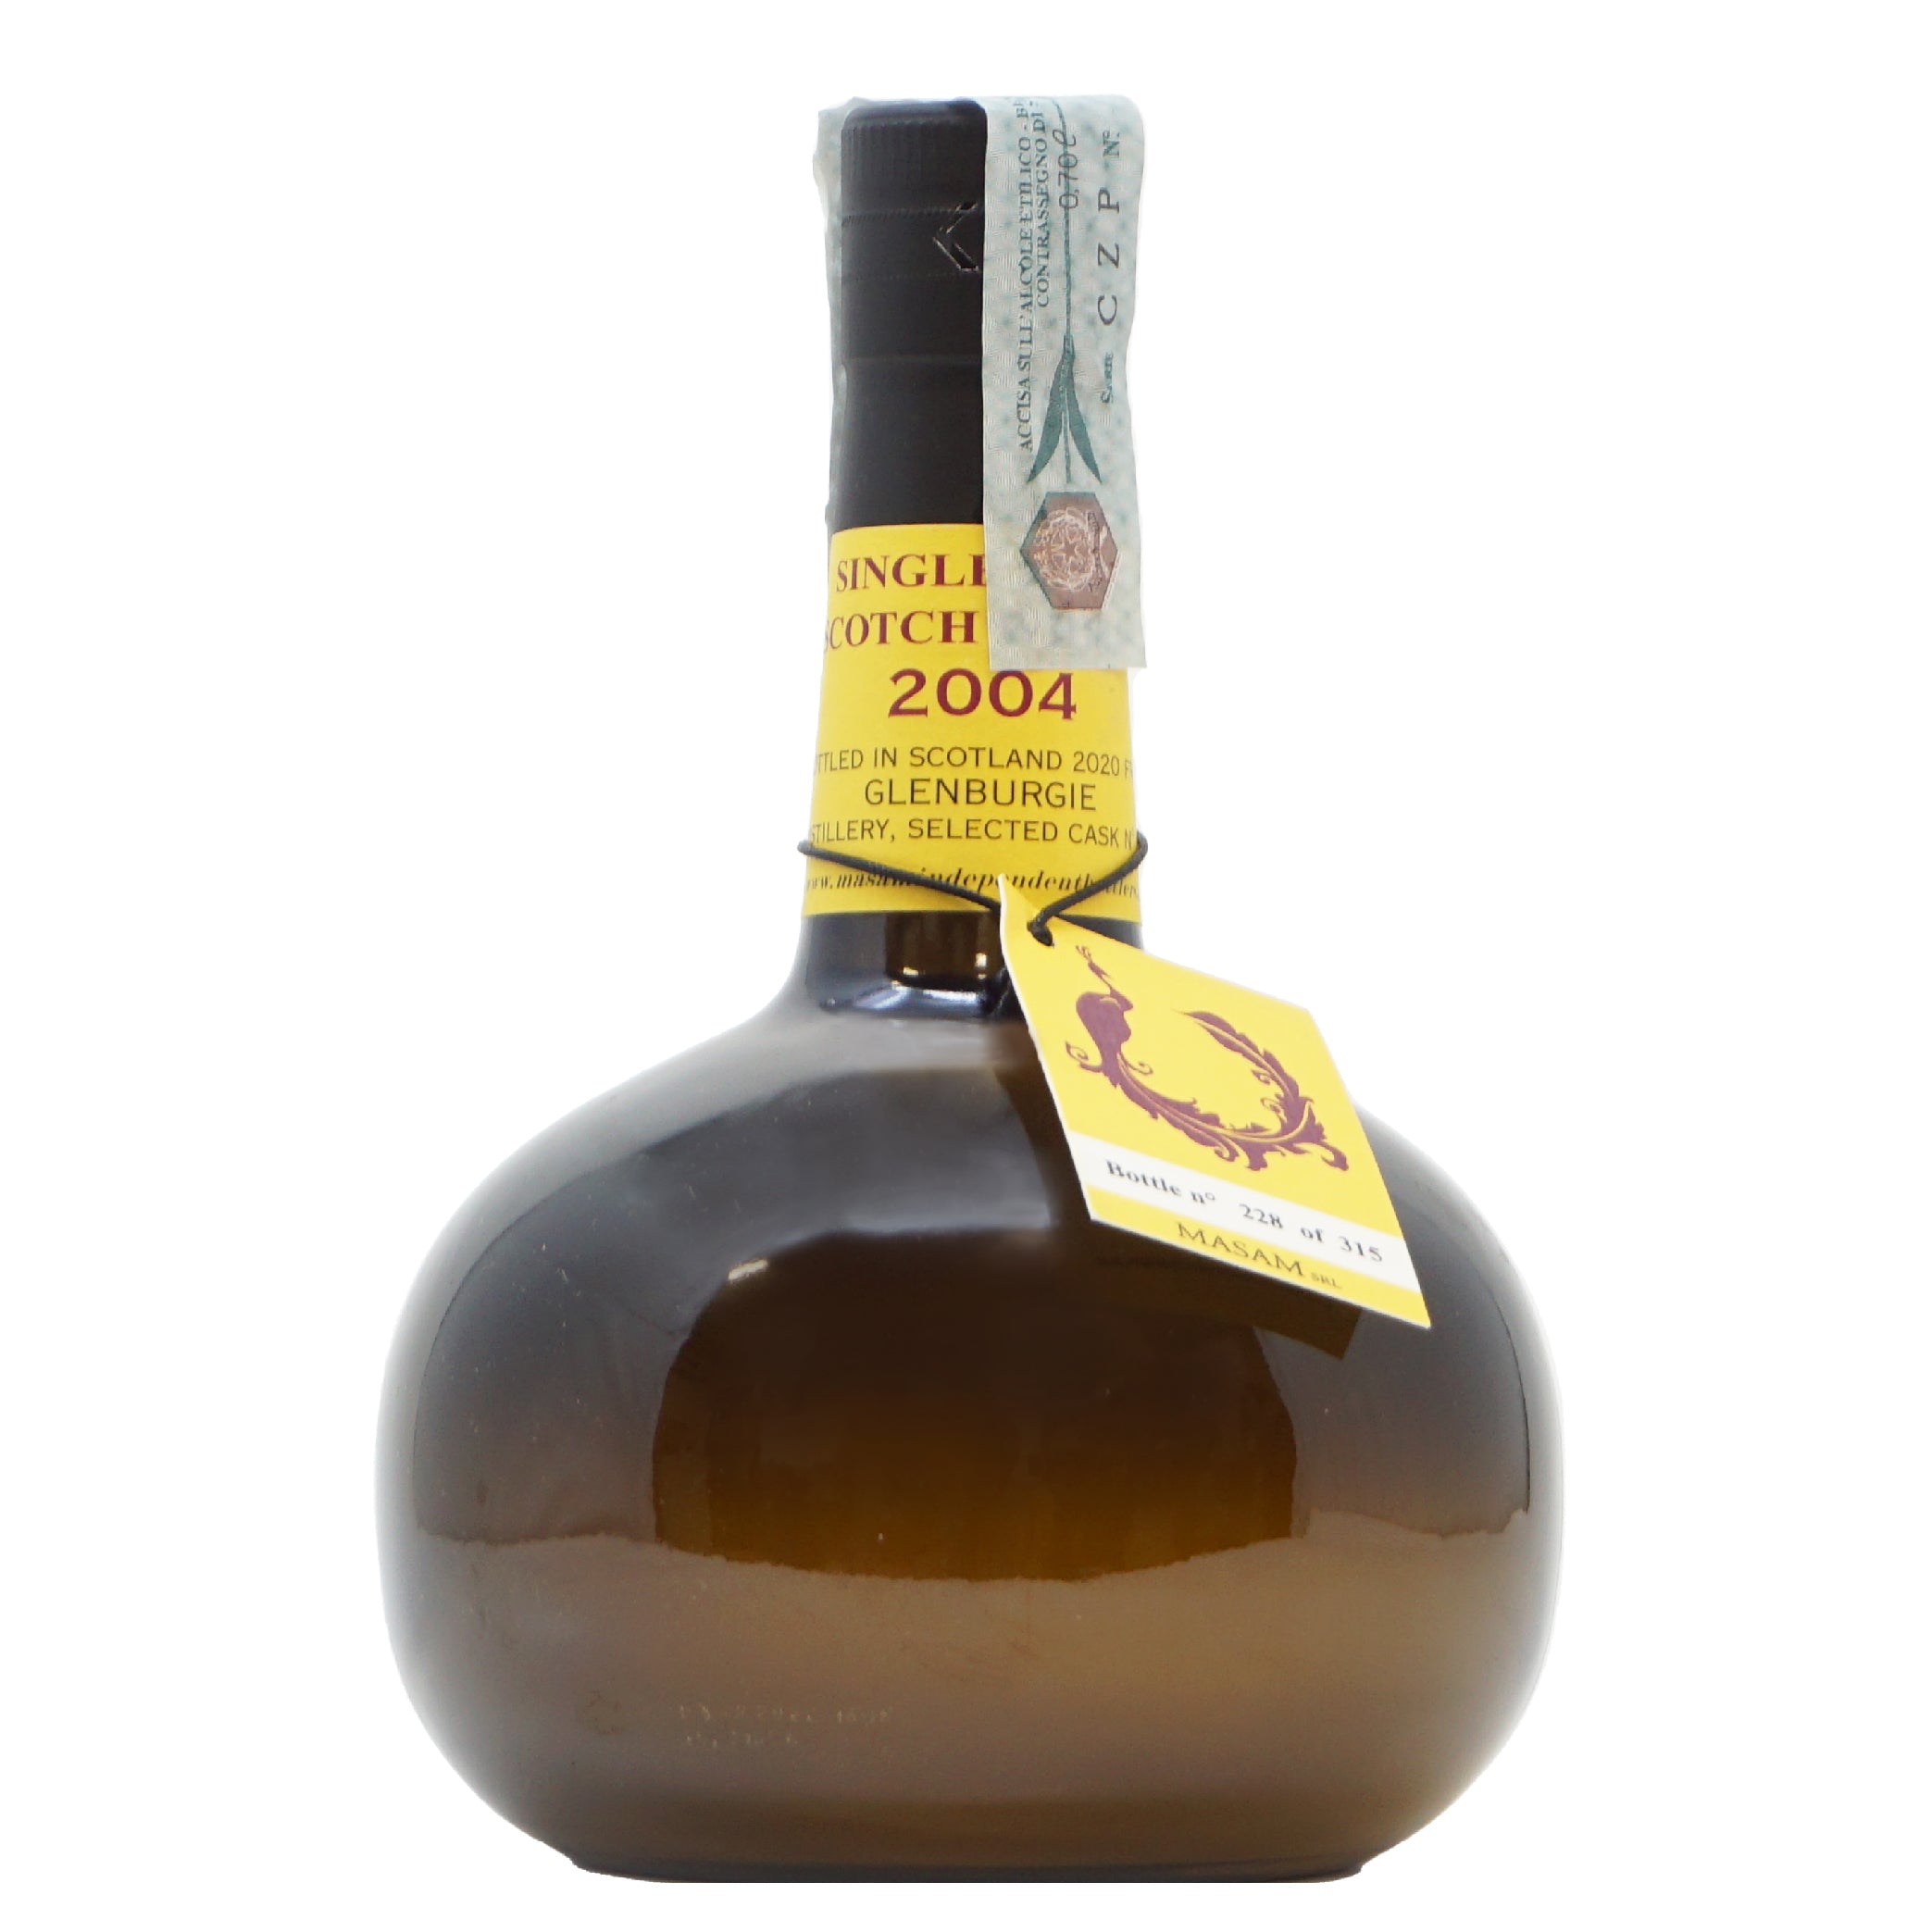 Whisky Glenburgie 2004 Single Scotch ml 700